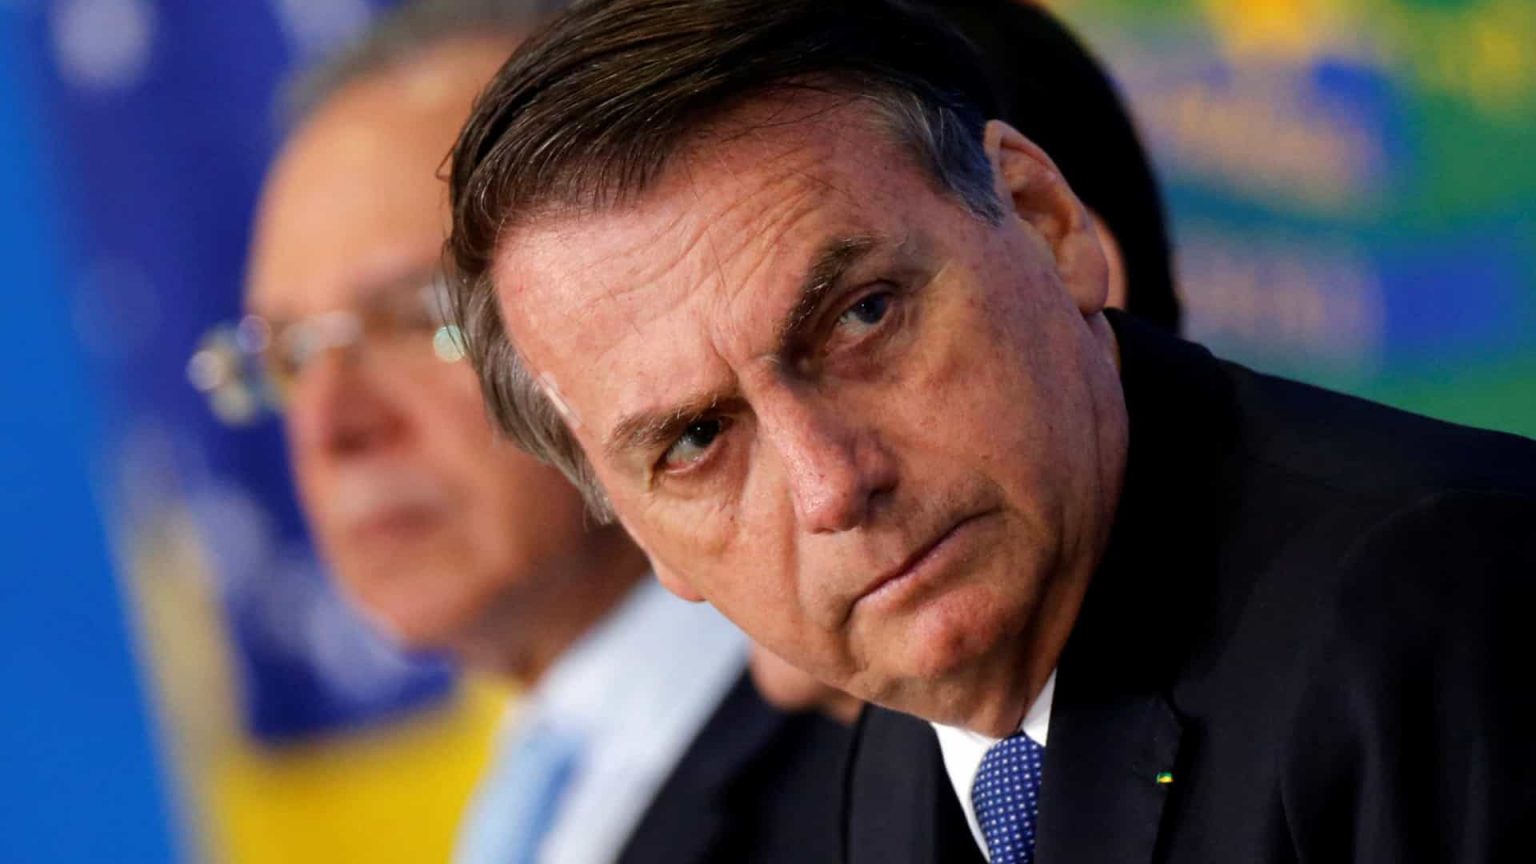 Sisejufe ajuíza ação contra Bolsonaro e demanda indenização aos servidores da Justiça Eleitoral